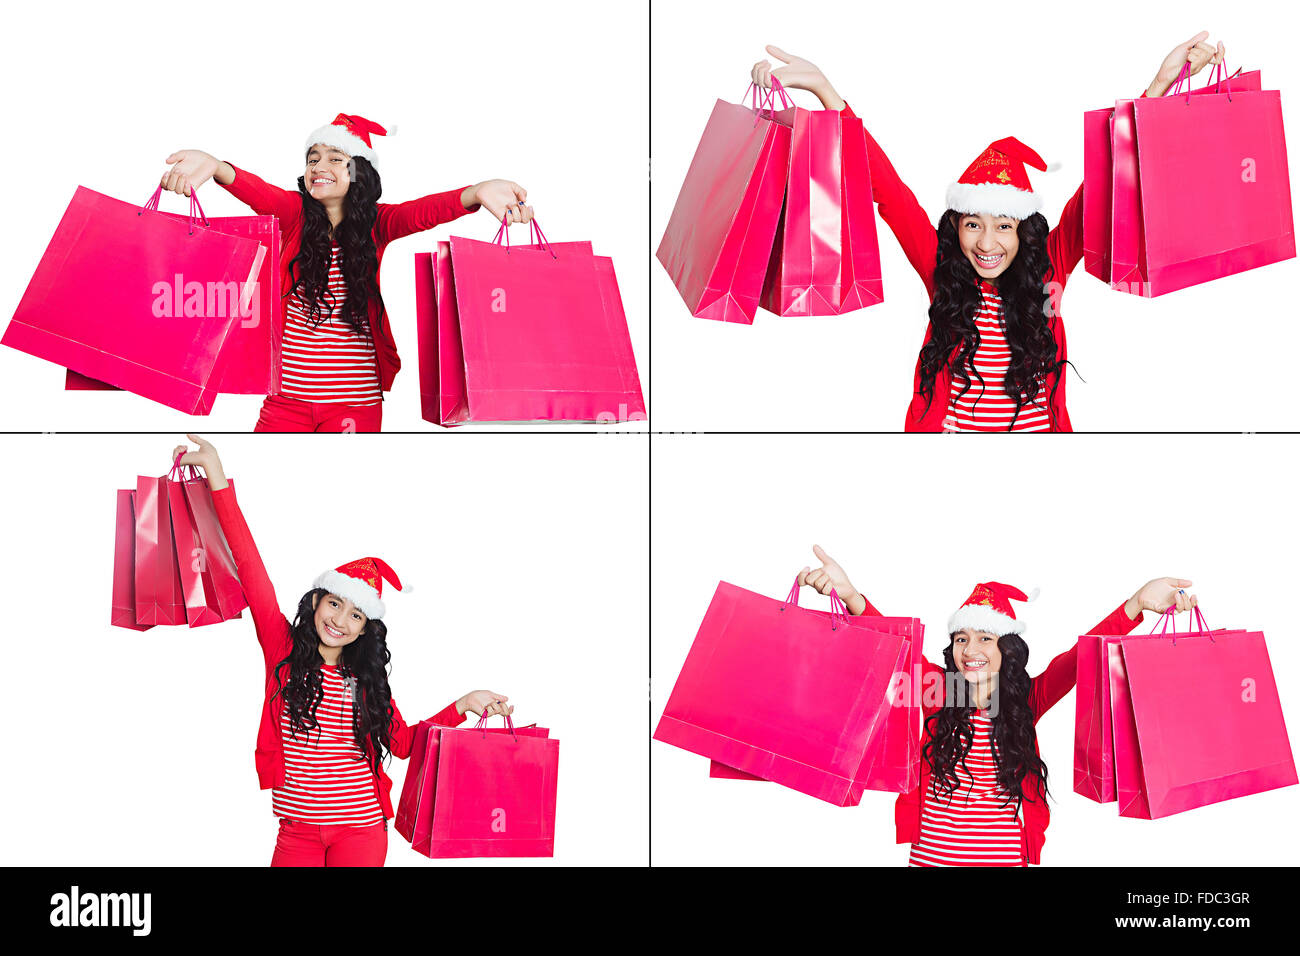 1 indischen junger Teenager Girl Shopping Bag Fülle shopping Weihnachtsfeier Gesichtsausdruck montage Bild Stockfoto